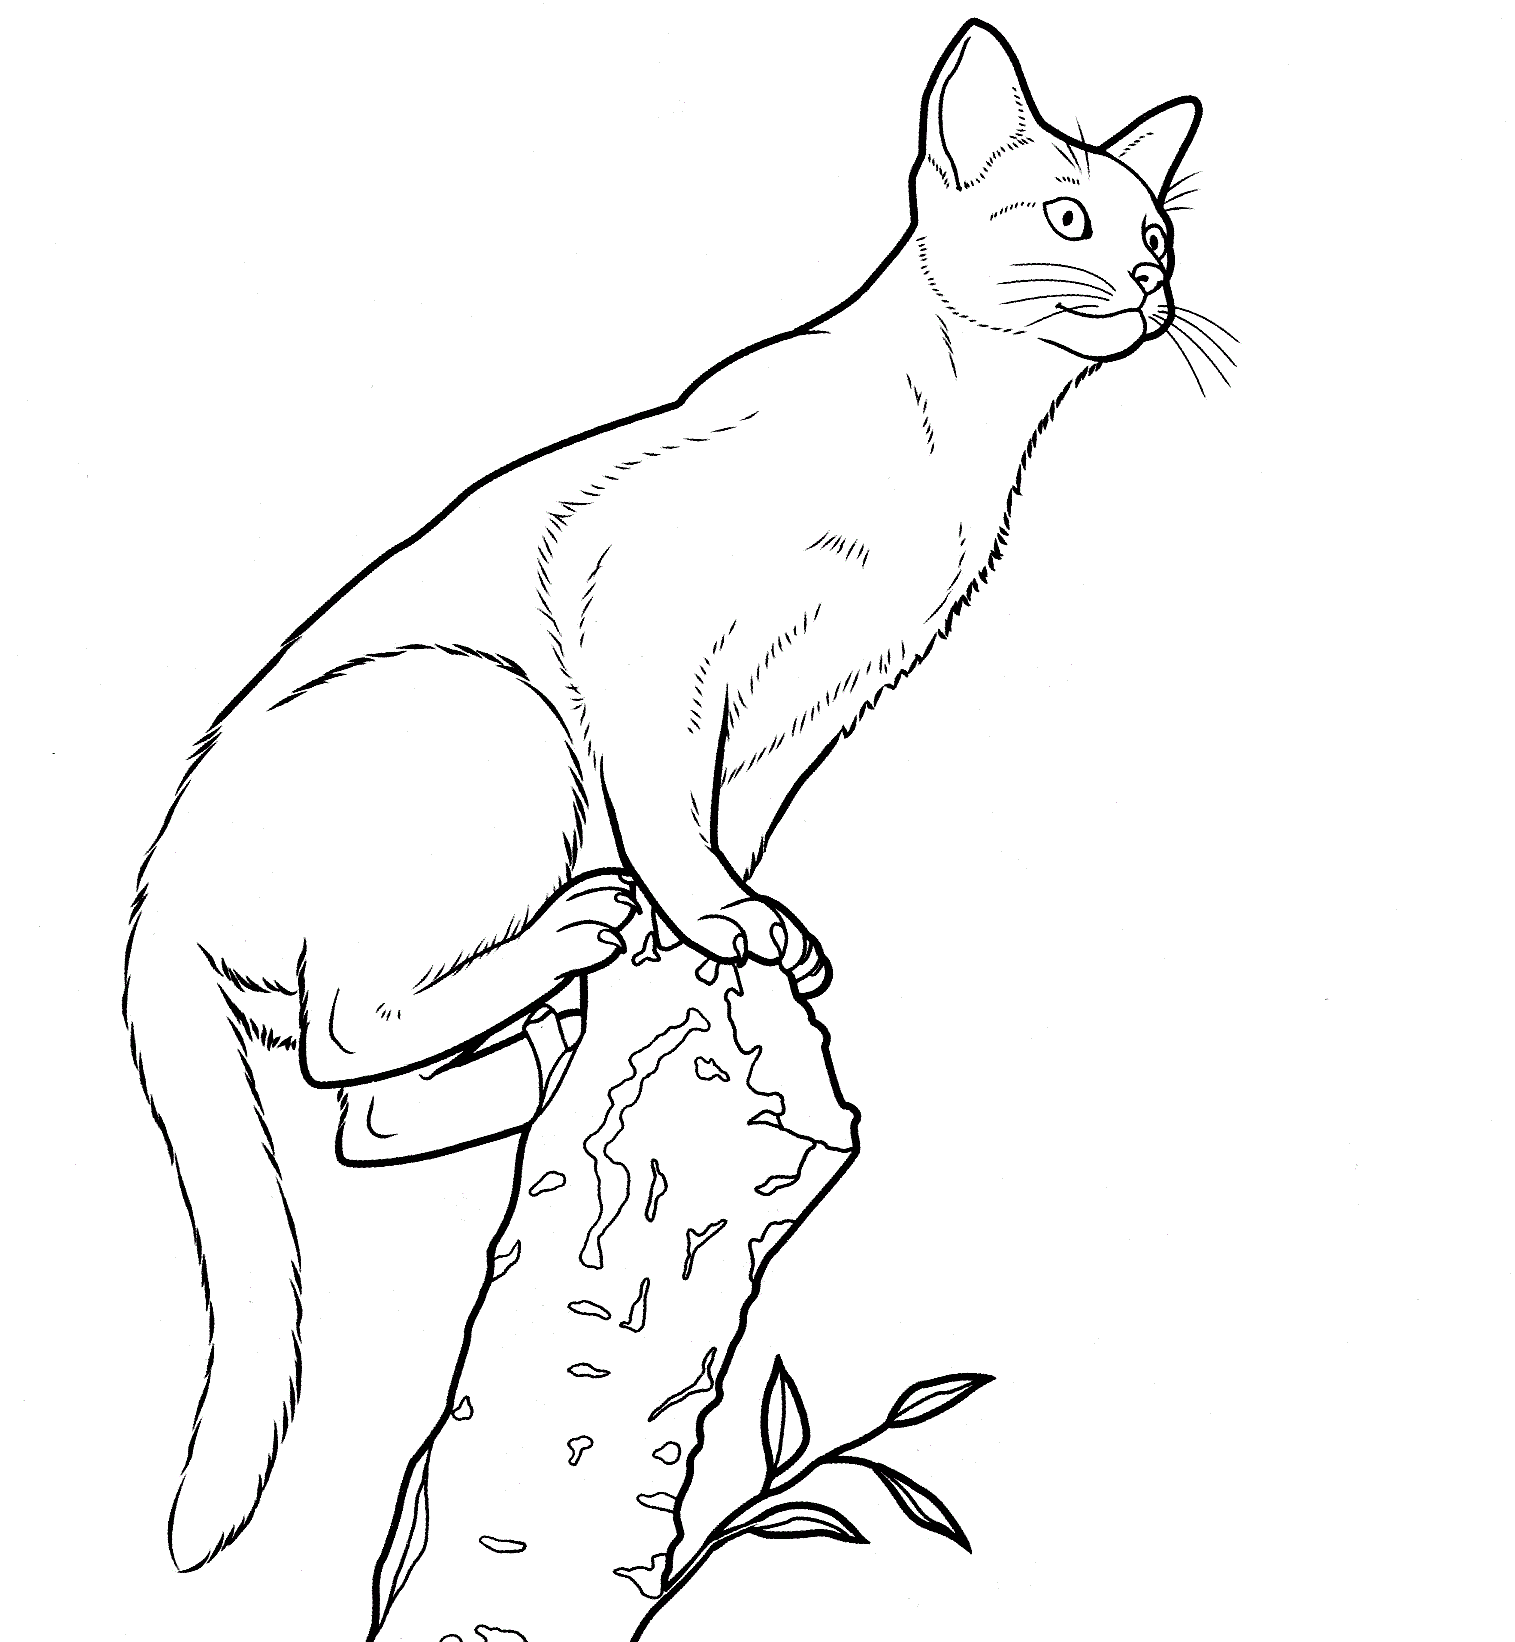 Abessijnse kat uit Cat